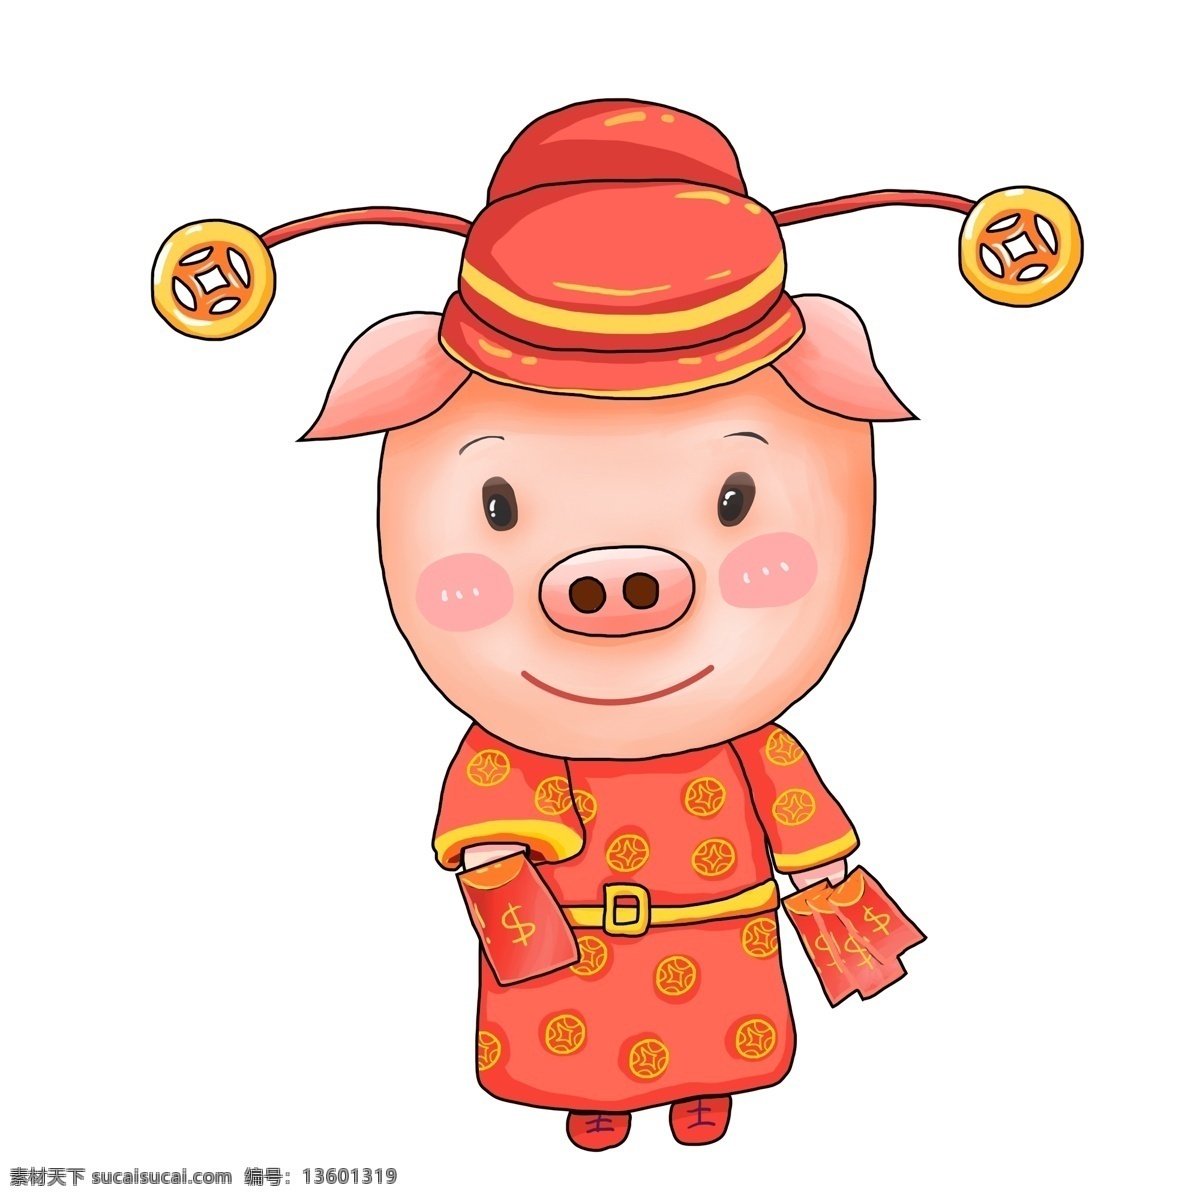 发红 包 财神 小 猪 卡通 喜庆 创意设计 红包 春节 插画 手绘 大年初二 小猪 猪年形象 财神小猪 psd设计 新年 猪年 2019年 过年 小猪形象